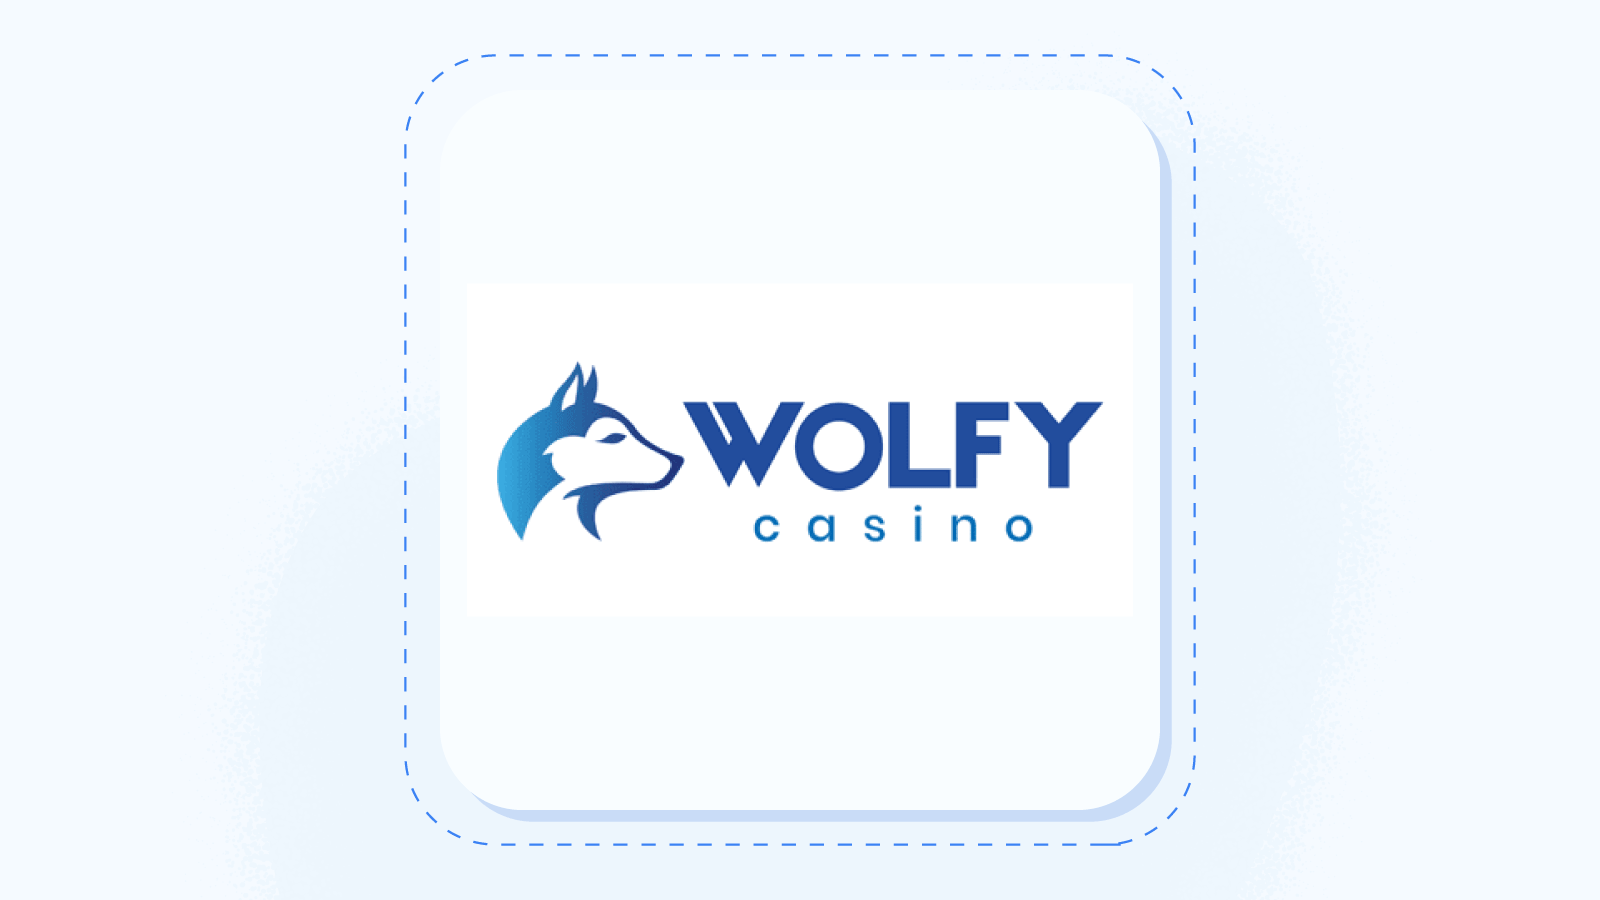 #1 Wolfy Casino